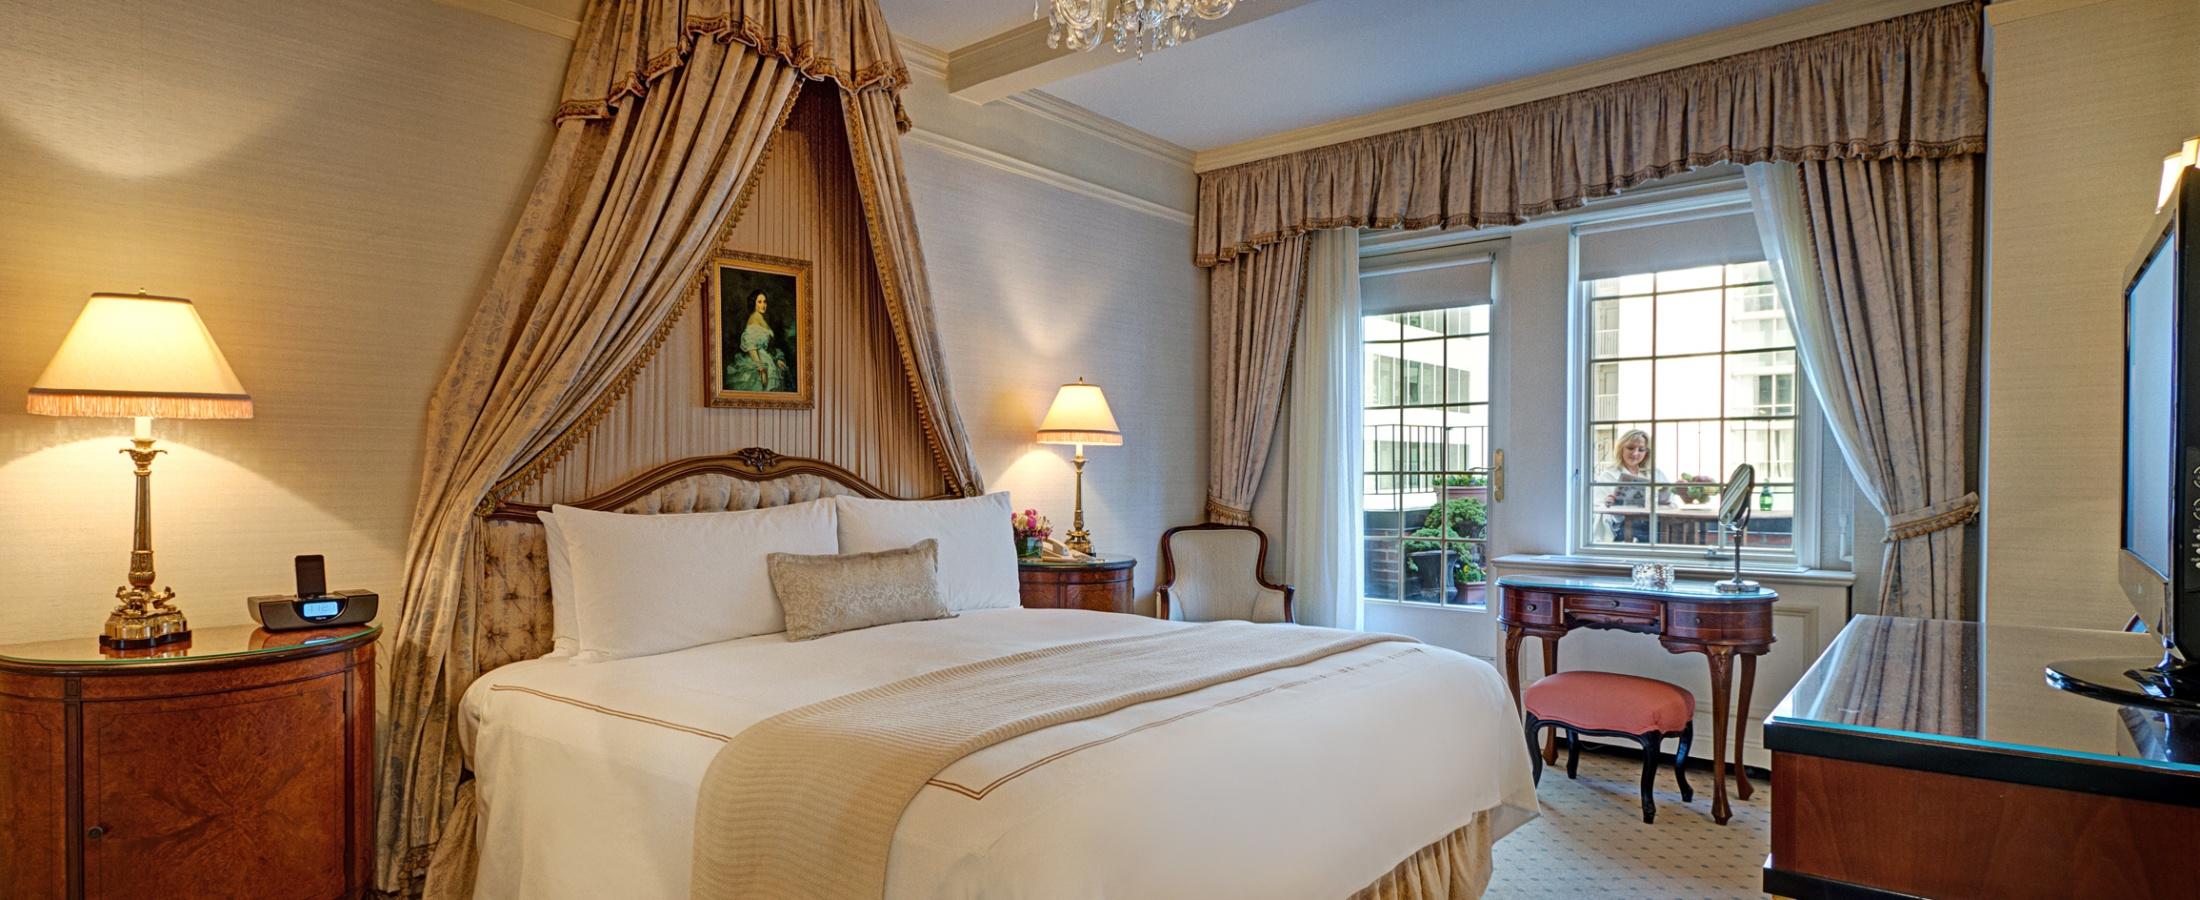 The bedroom of the Presidential Suite honoring Vladimir Horowitz at the Hotel Elysee.